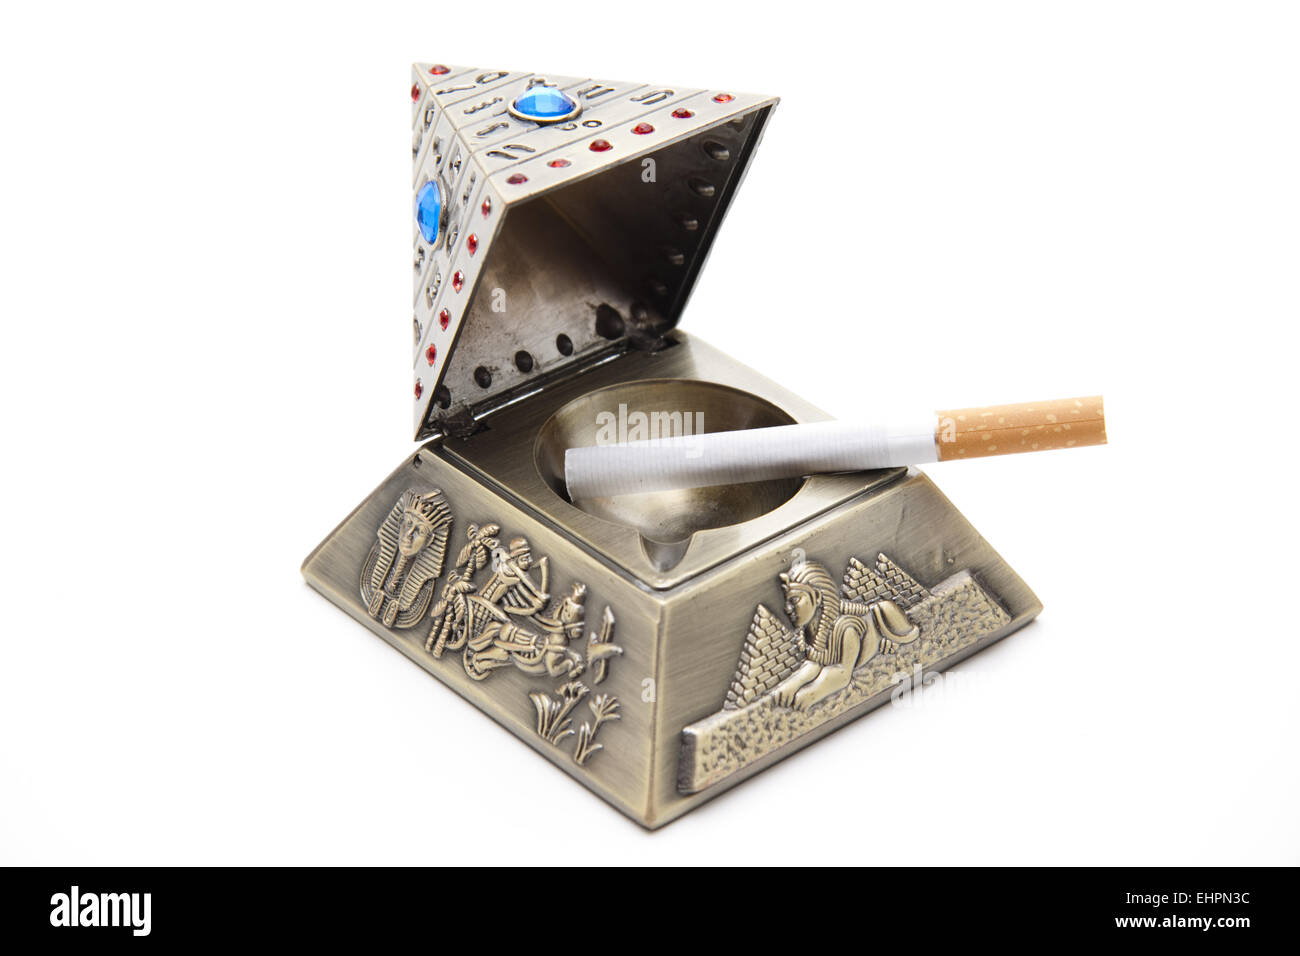 Egyptian pyramid ashtray Stock Photo